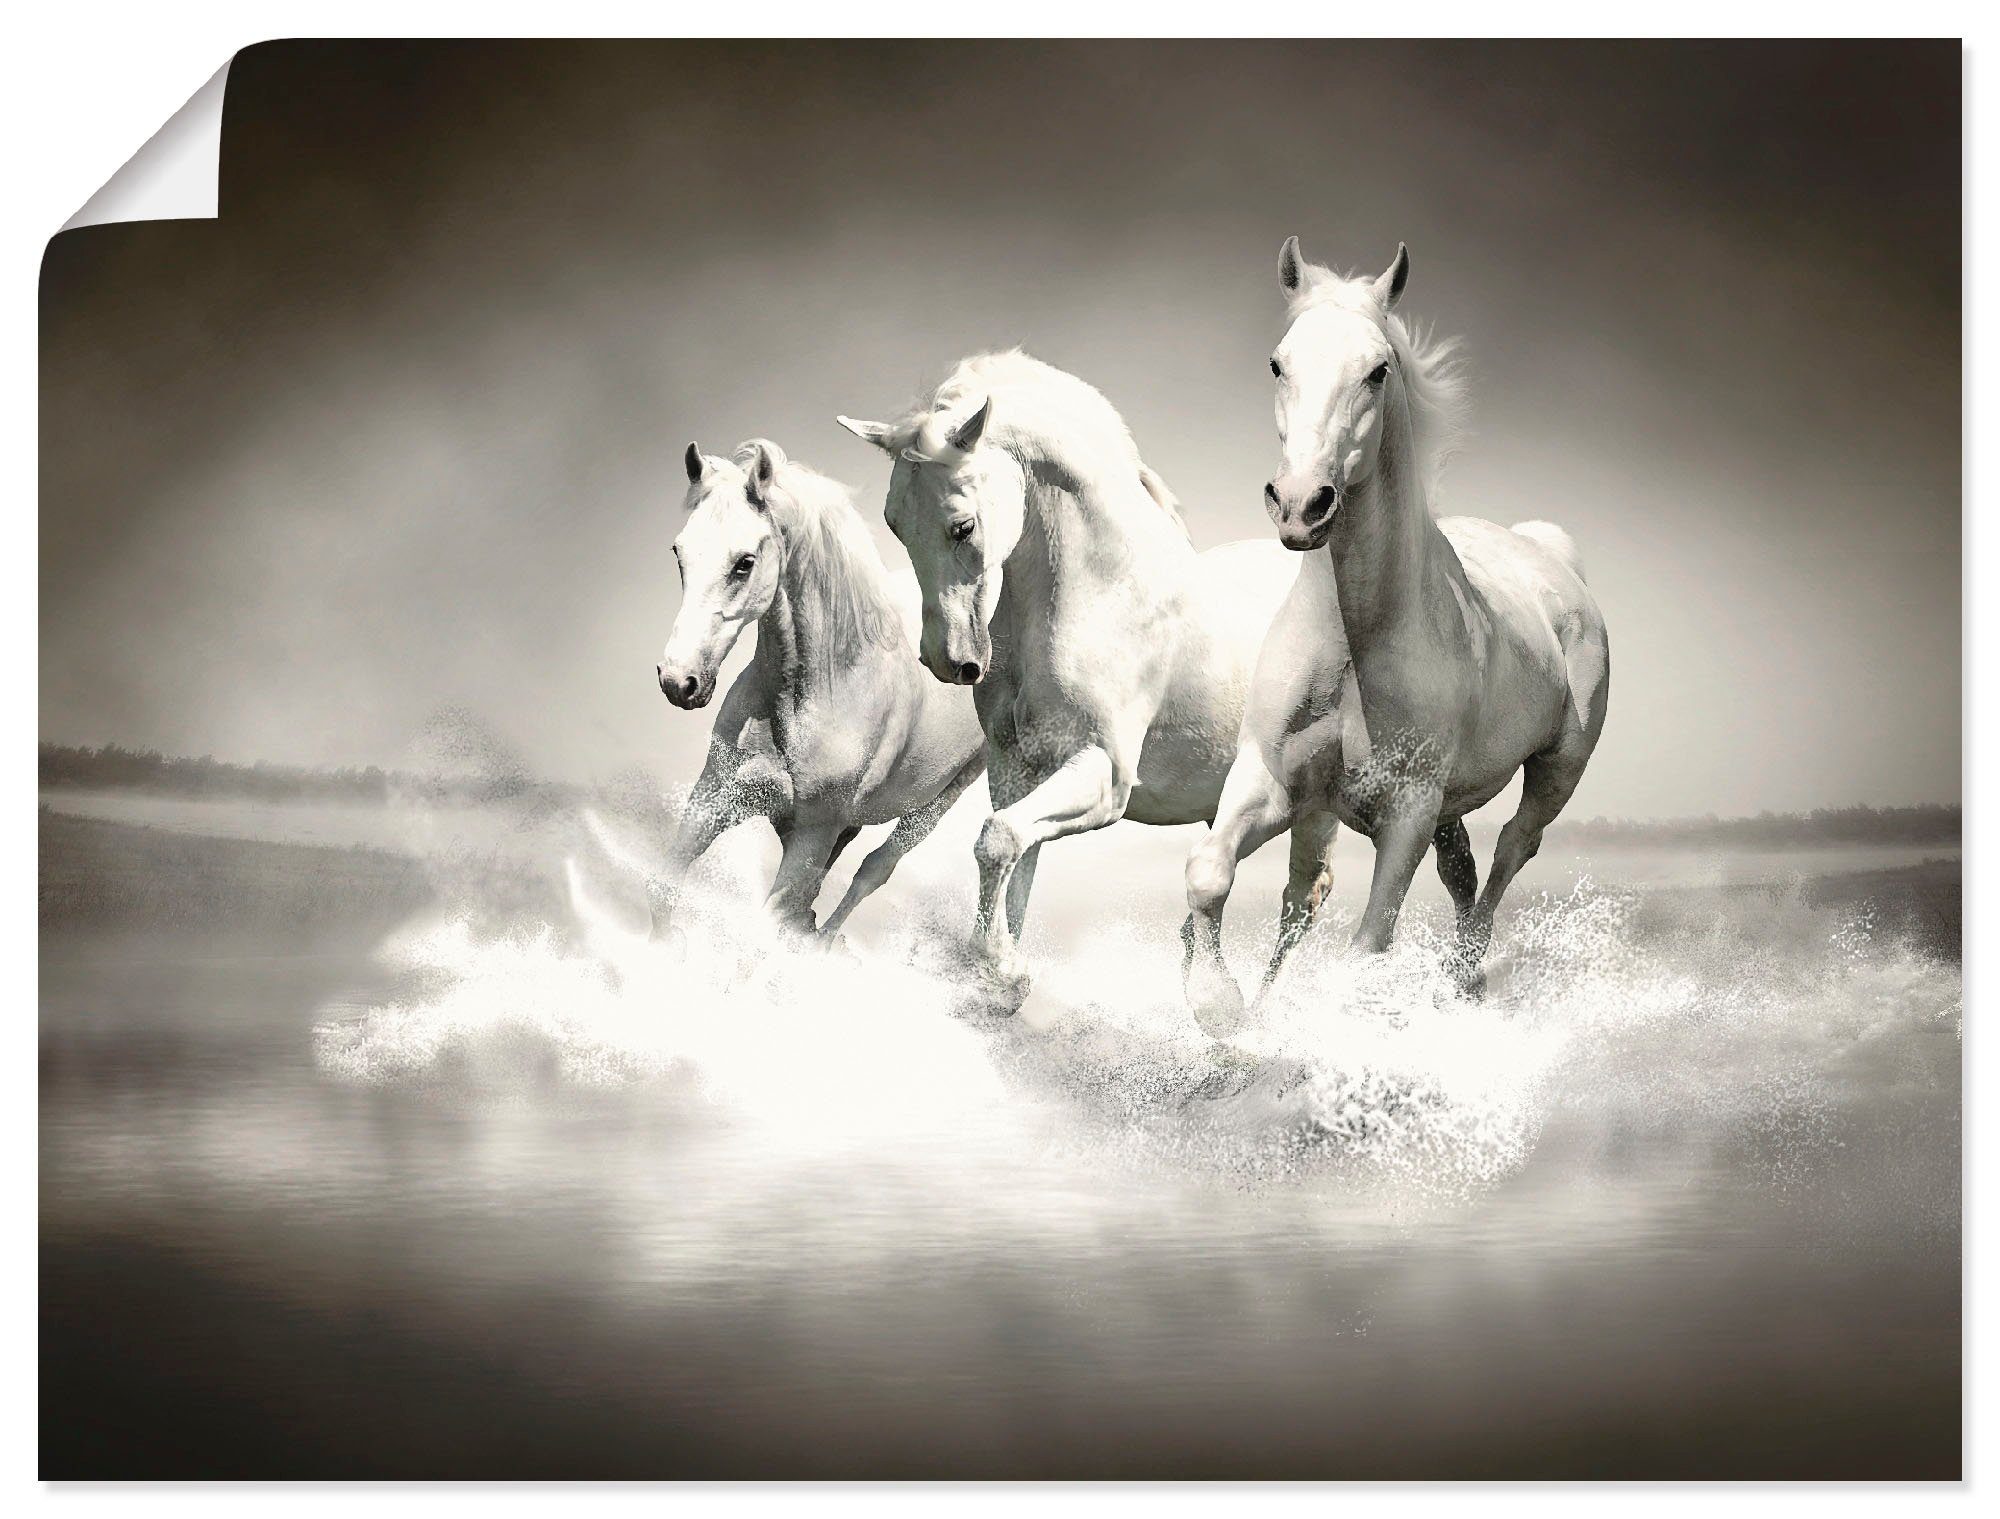 Artland Artprint Kudde van witte paarden in vele afmetingen & productsoorten - artprint van aluminium / artprint voor buiten, artprint op linnen, poster, muursticker / wandfolie oo